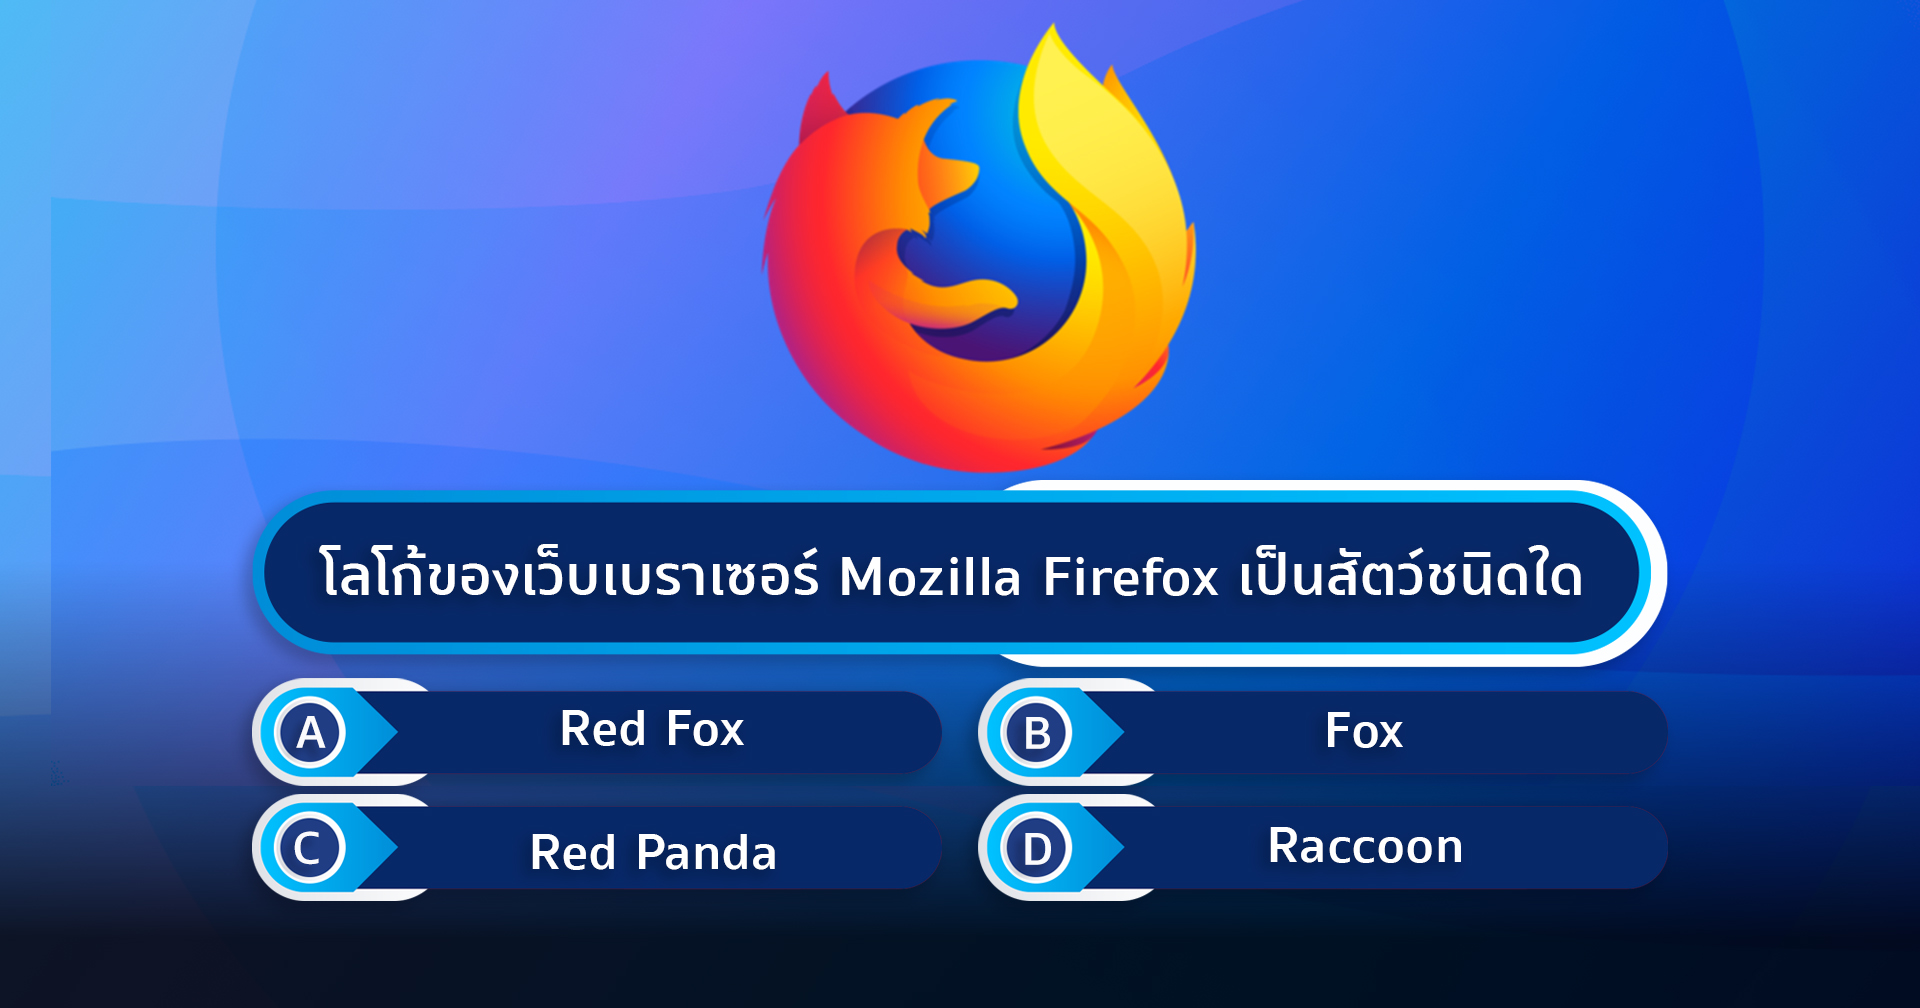 โลโก้ของเว็บเบราเซอร์ Mozilla Firefox เป็นสัตว์ชนิดใด?